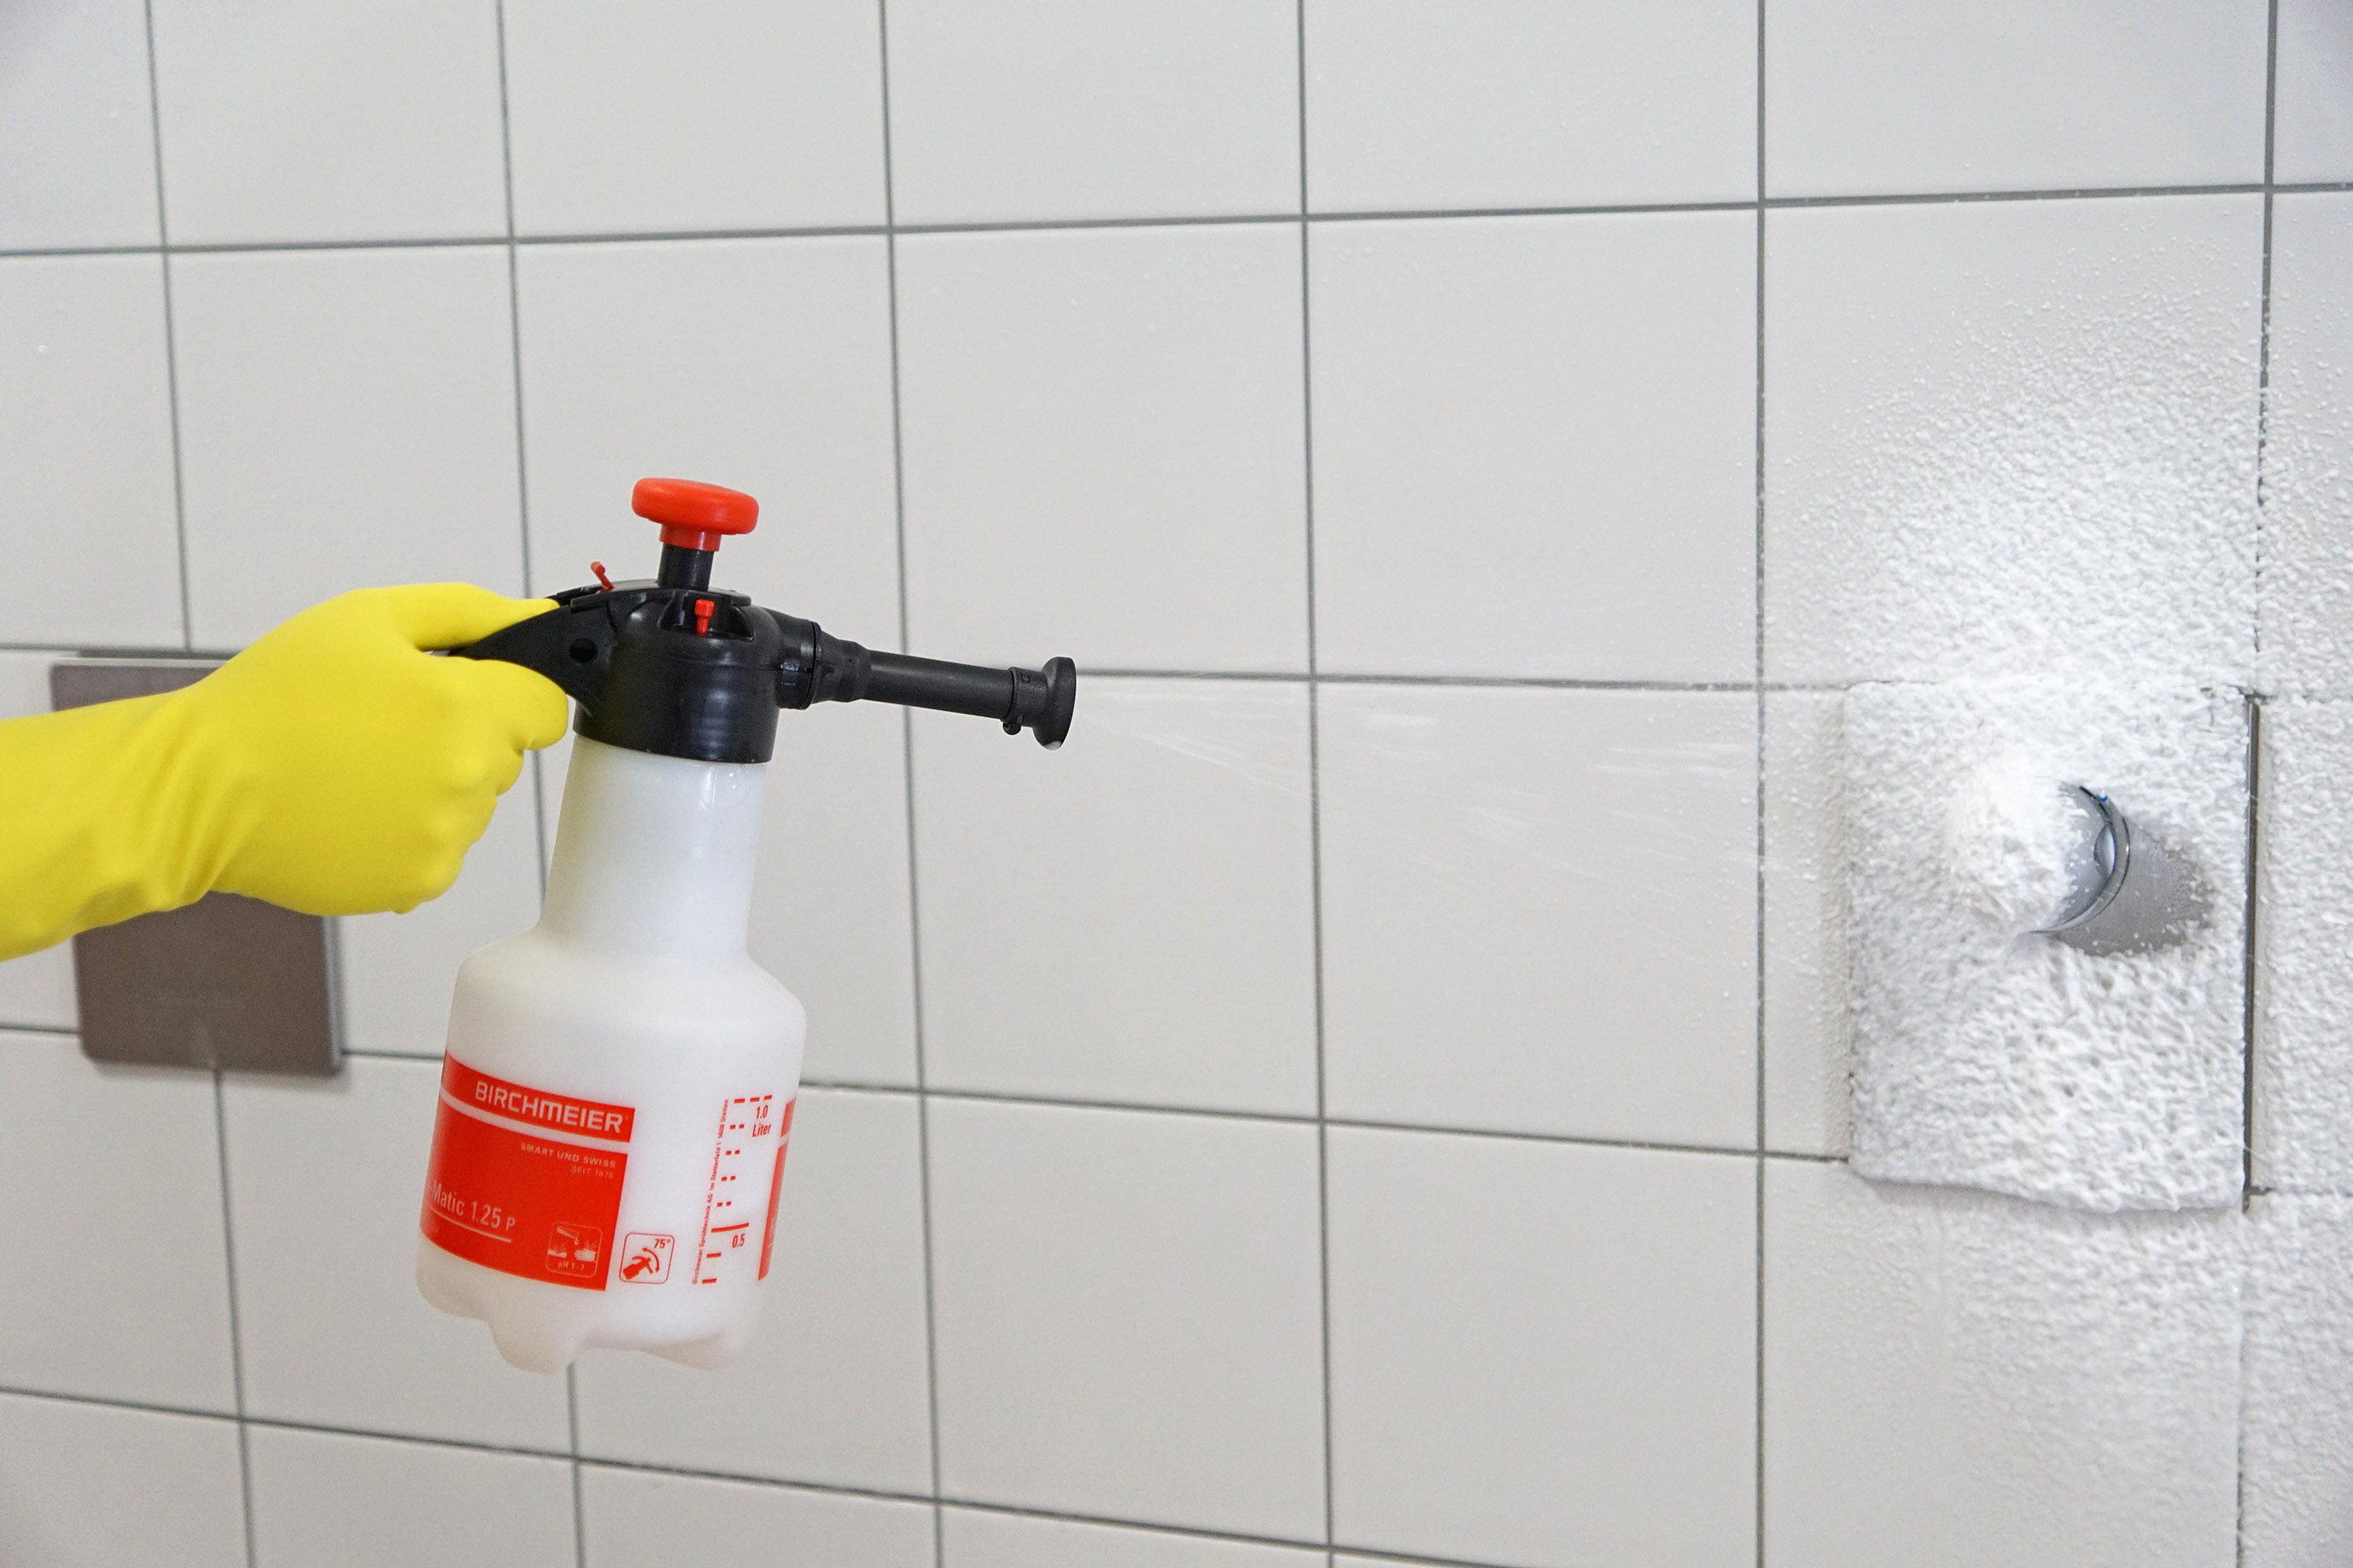 Schaumgerät Foam-Matic 1.25 P vn Birchmeier zur Reinigung von sanitären Anlagen